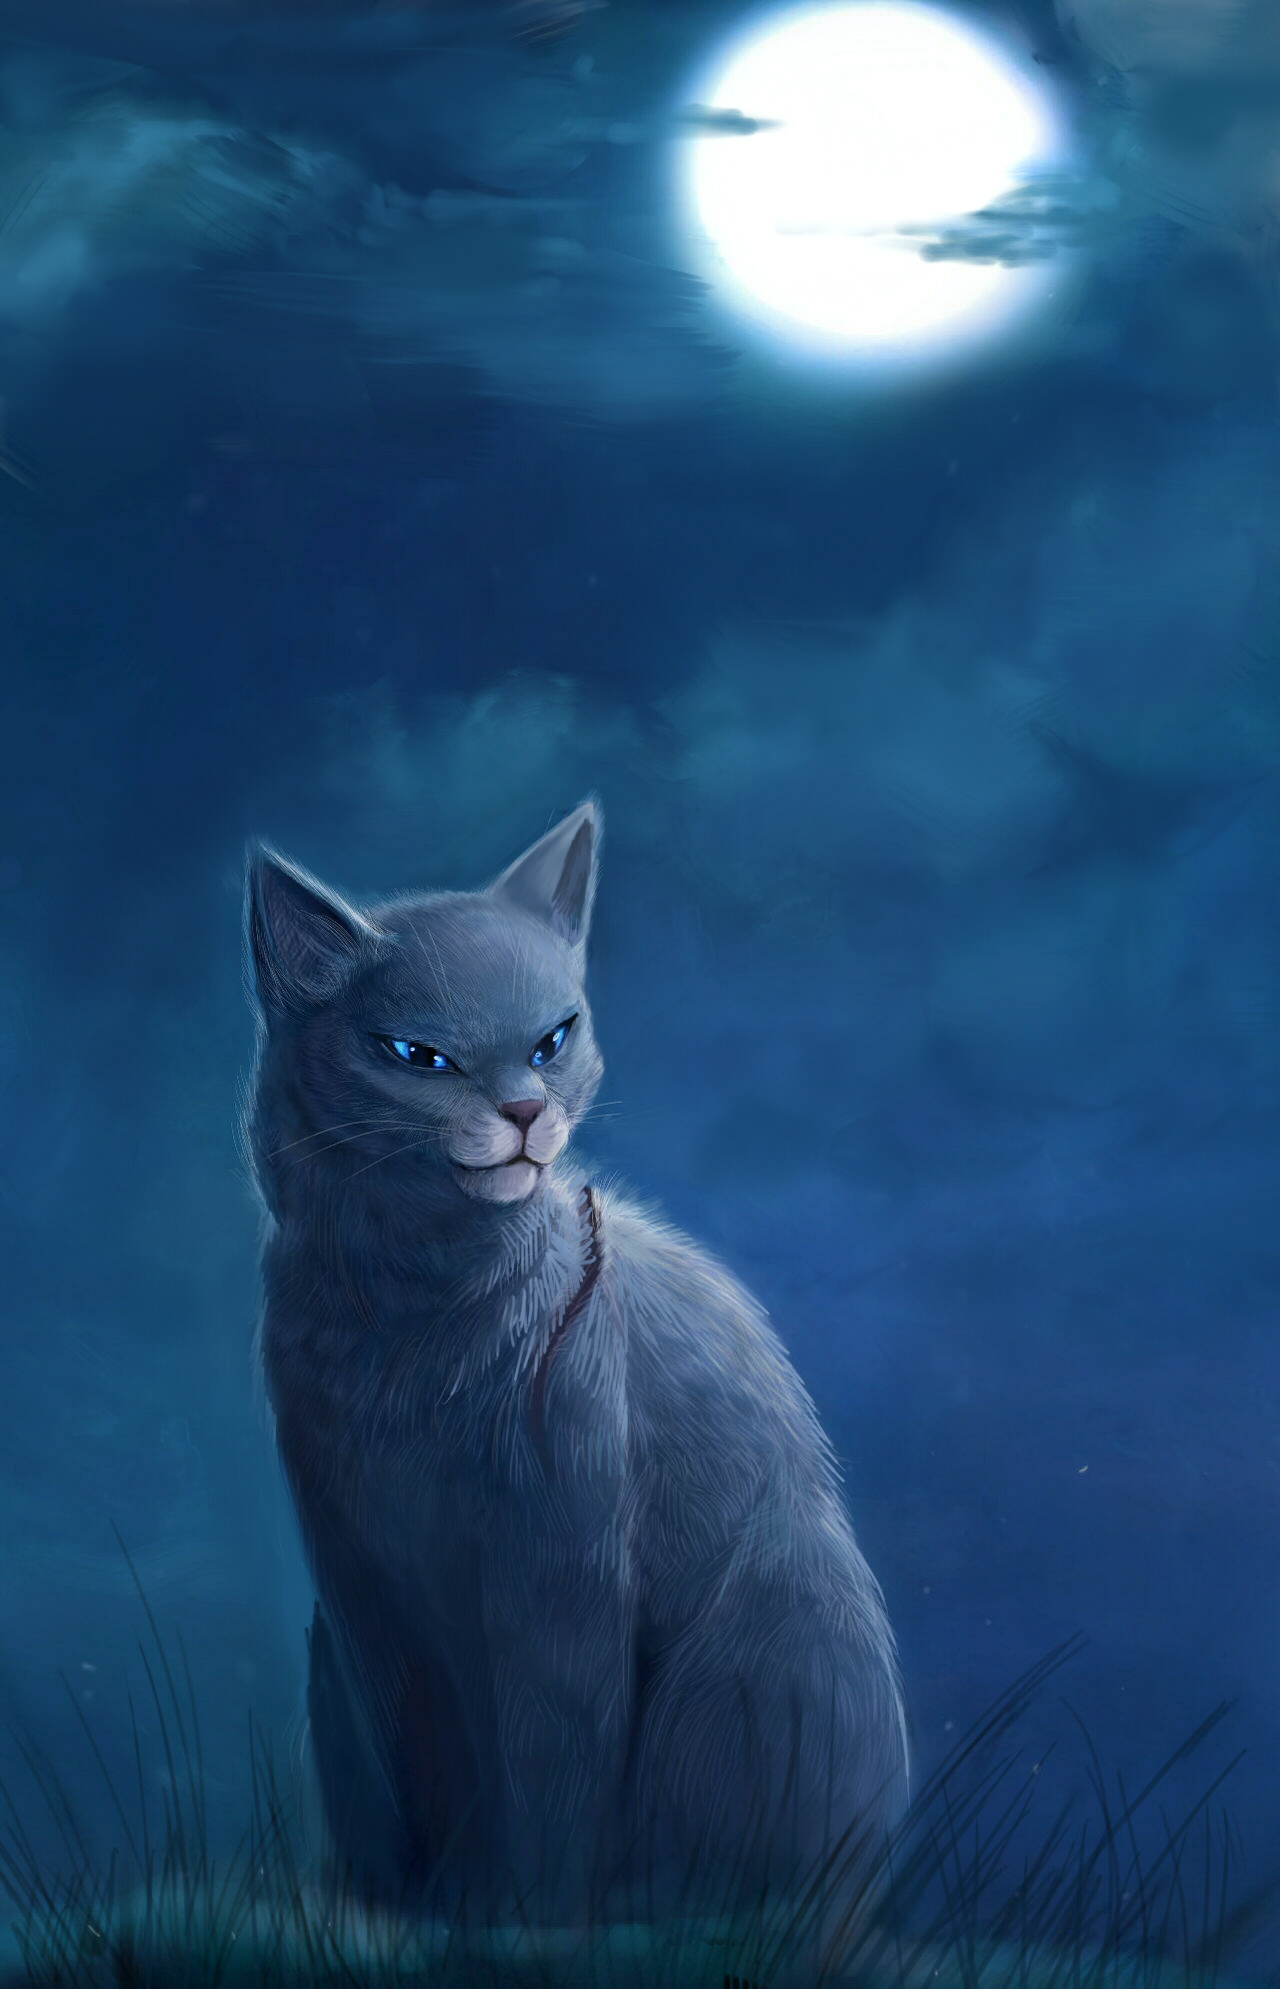 Bluestar by Muzli on deviantART  Warrior cats, Warrior cats art